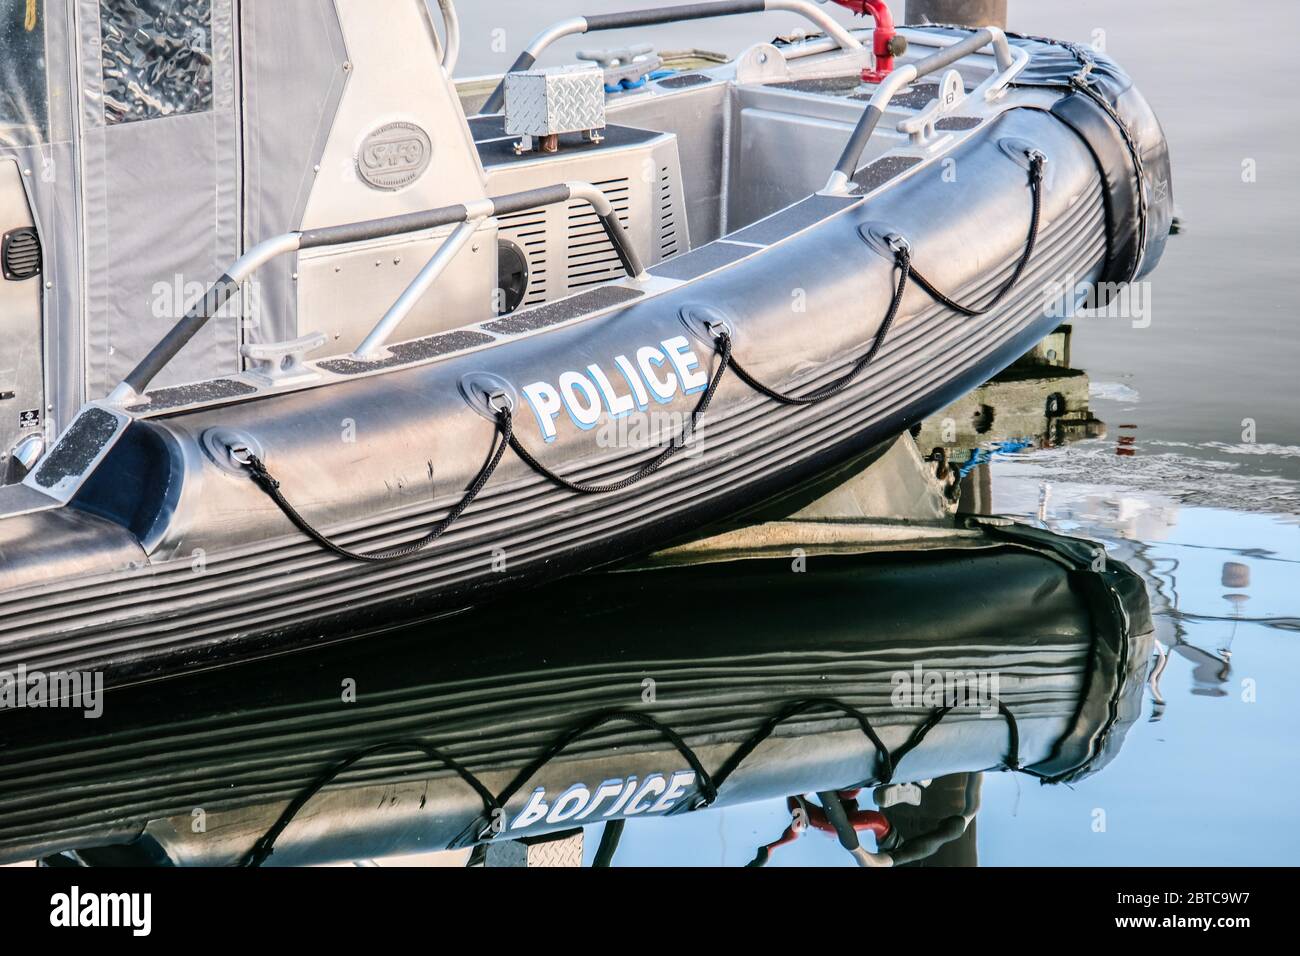 Un bateau gonflable de police Zodiac sur un quai avec réflexion dans l'eau Banque D'Images